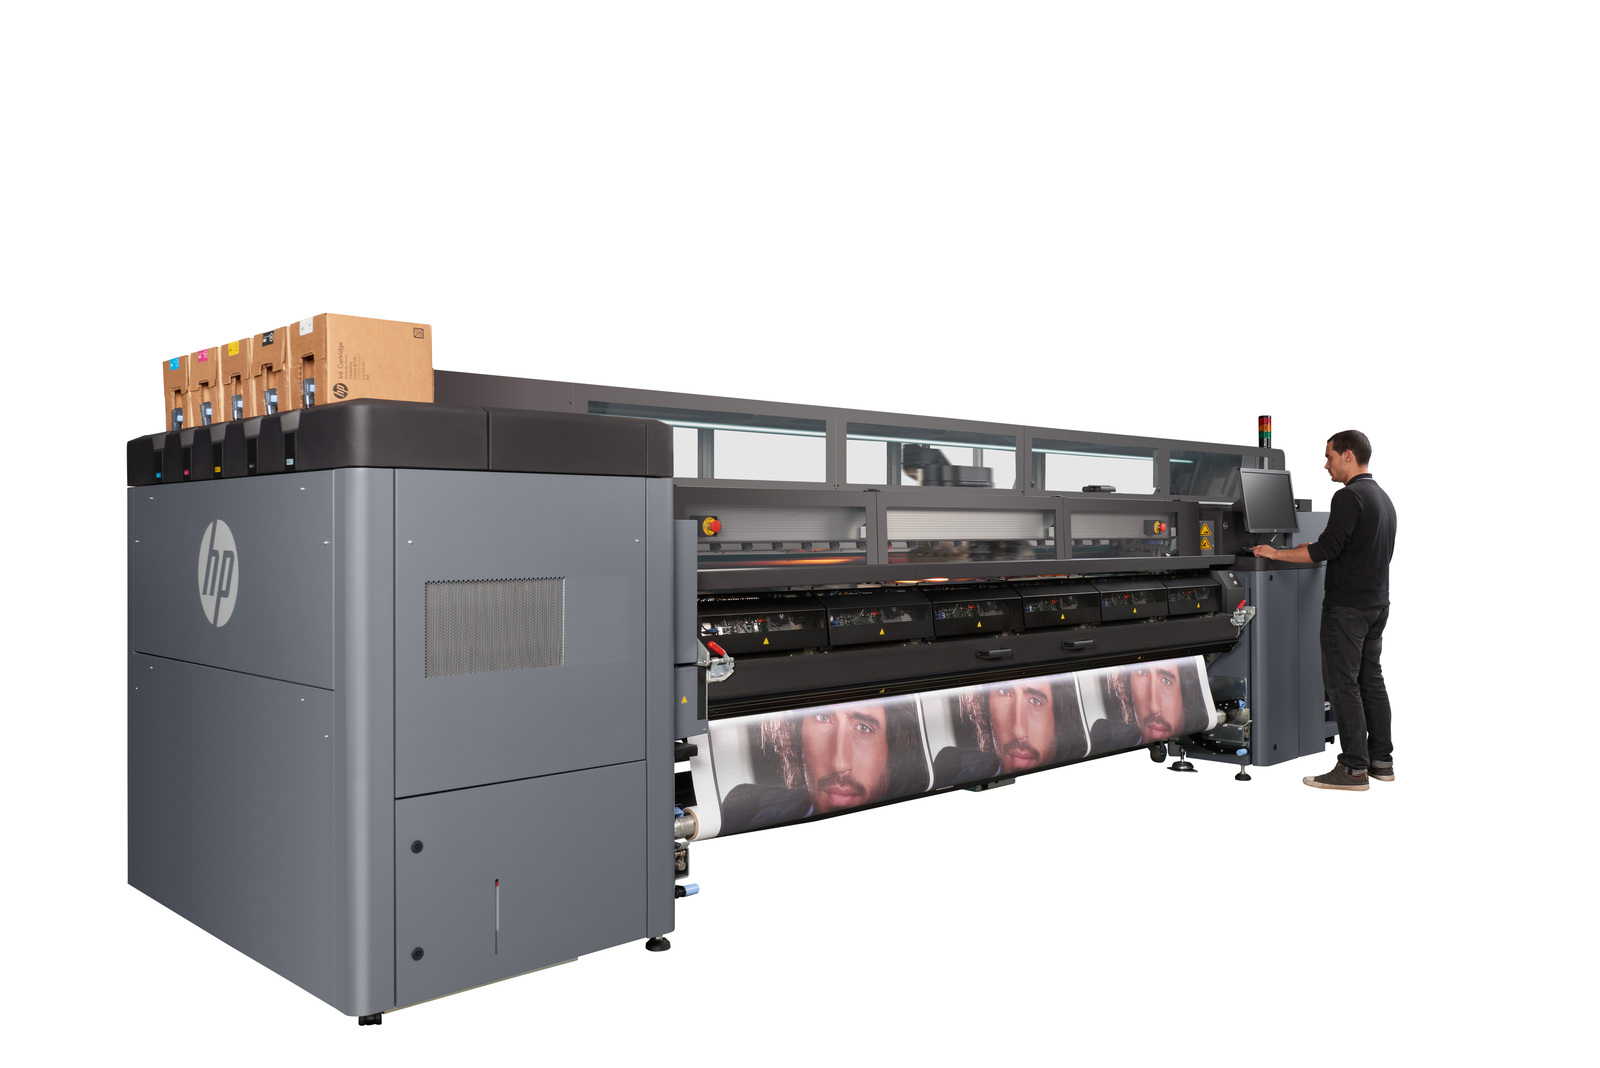 HP Latex 3600 Printer